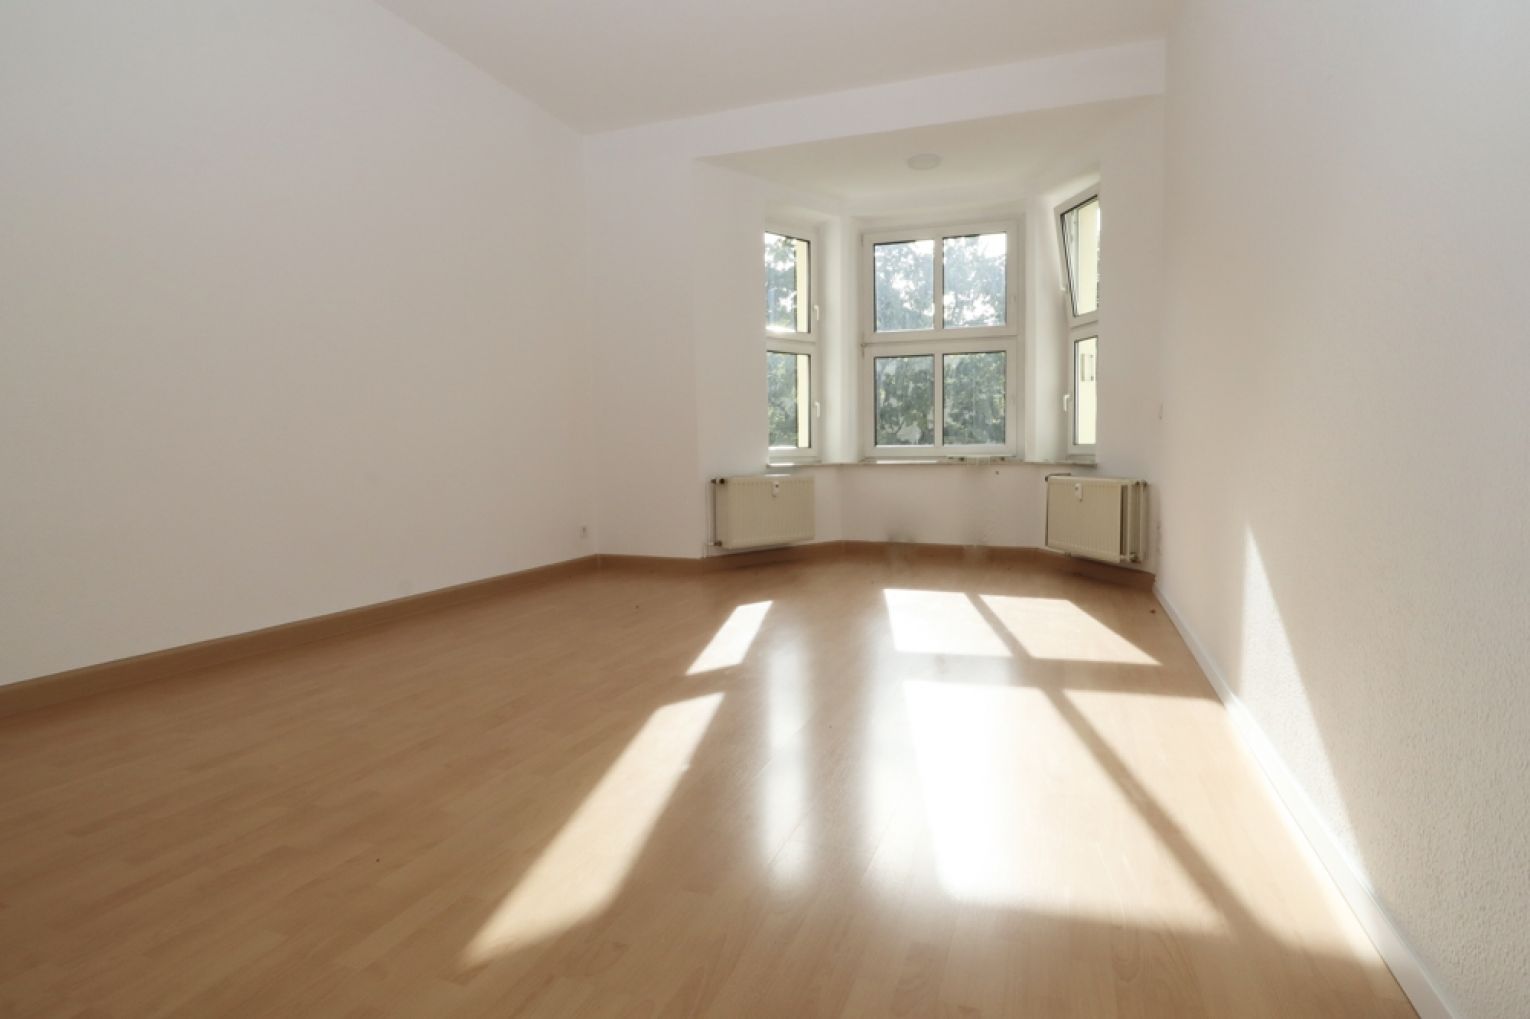 Kappel • 2 Zimmer • Chemnitz • Balkon • lichtdurchflutet • erste Wohnung • jetzt Termin vereinbaren